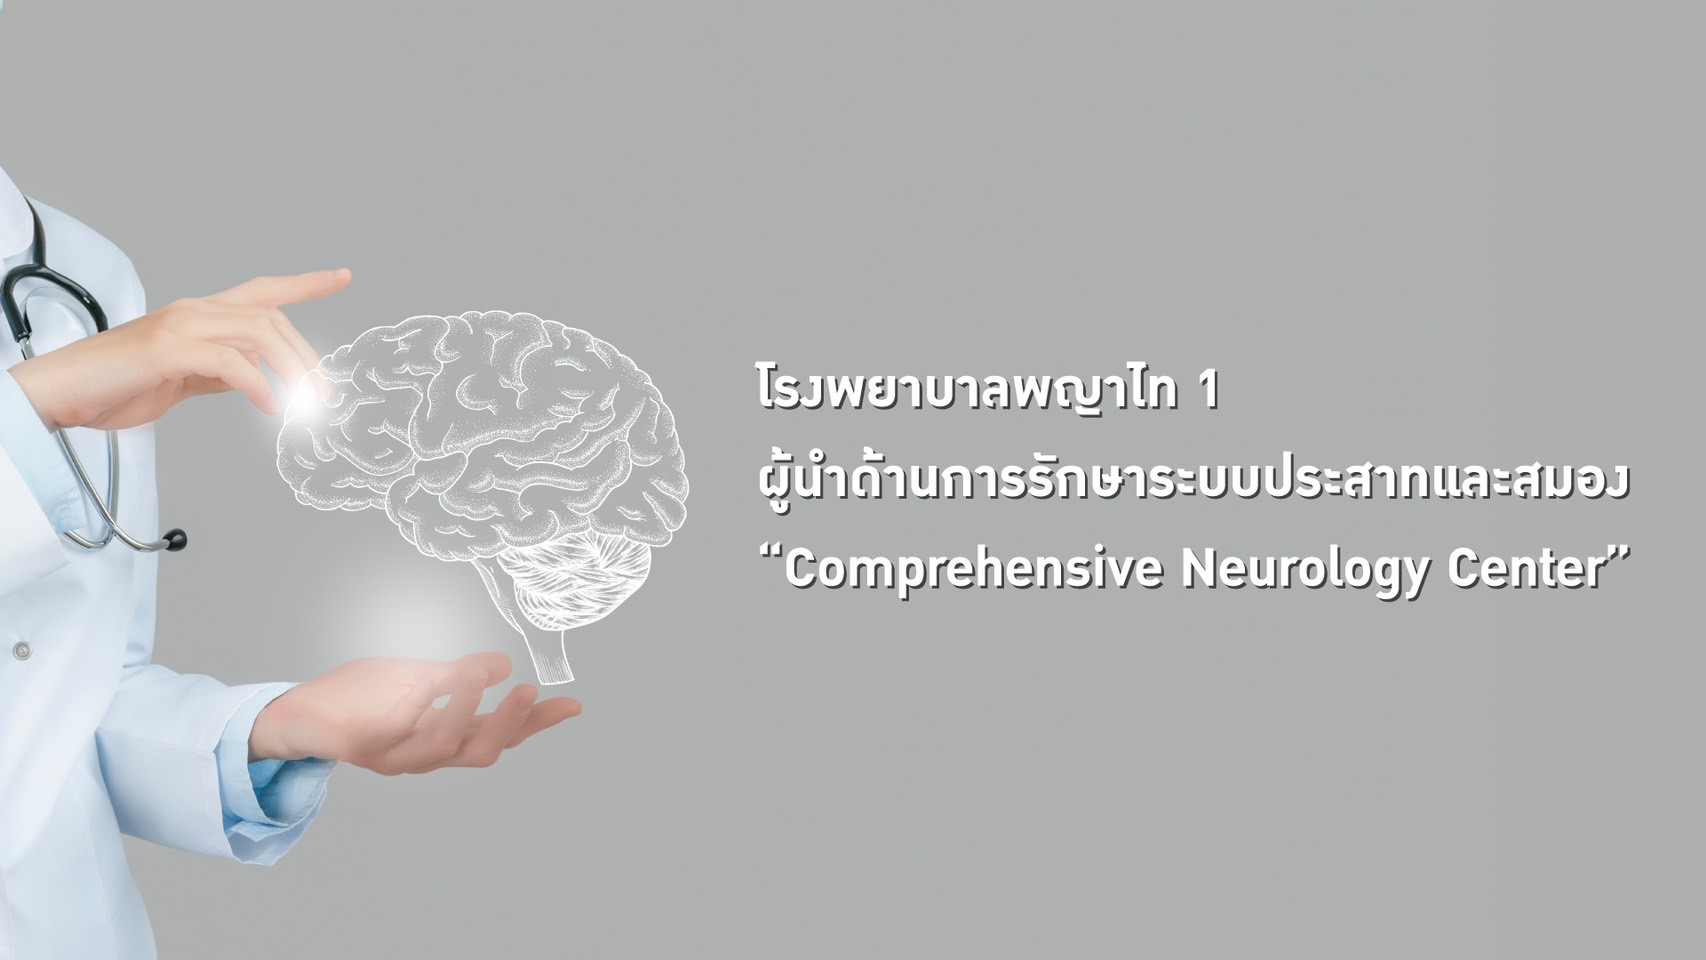 โรงพยาบาล พญาไท 1 ผู้นำด้านการรักษา    ระบบประสาทและสมอง “Comprehensive Neurology Center”